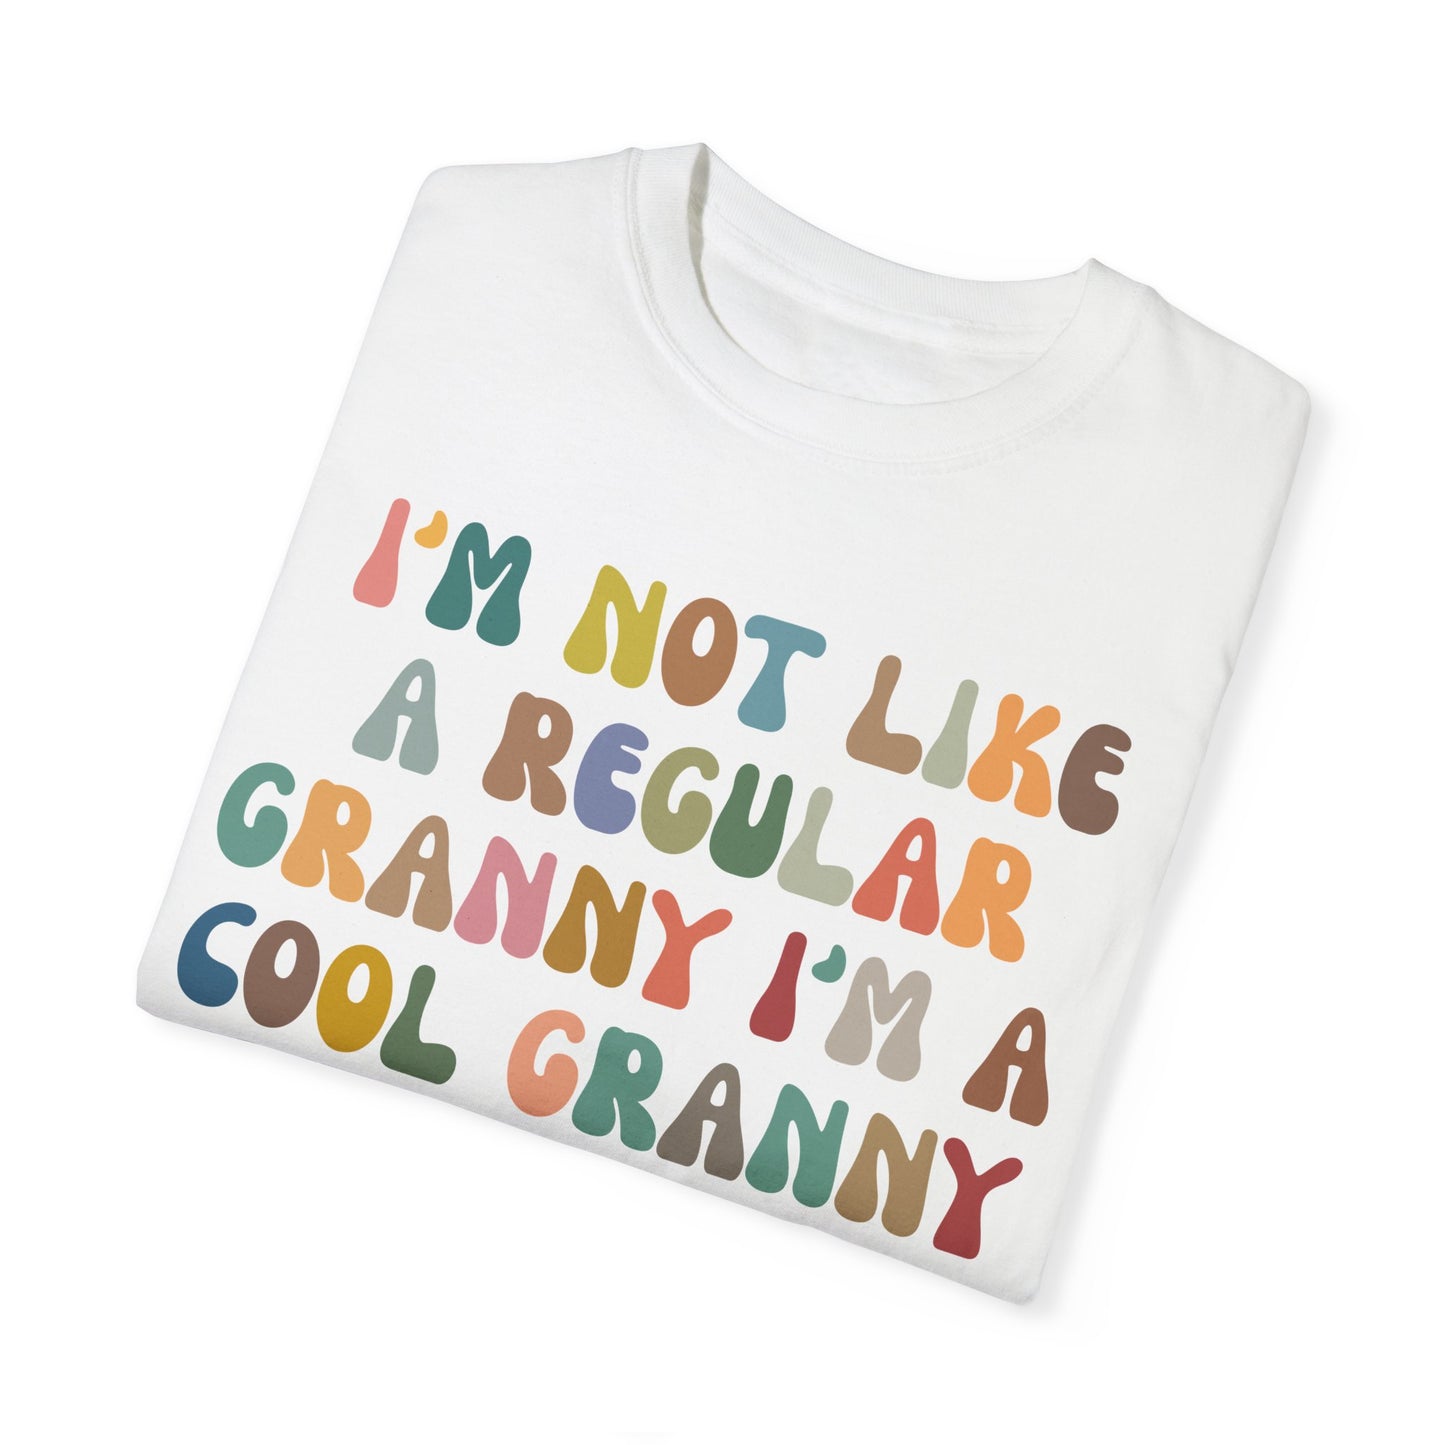 I'm Not Like A Regular Granny I'm A Cool Granny Shirt, Best Granny Shirt, Gift for Granny, Cool Granny Shirt, Funny Granny Shirt, CC976